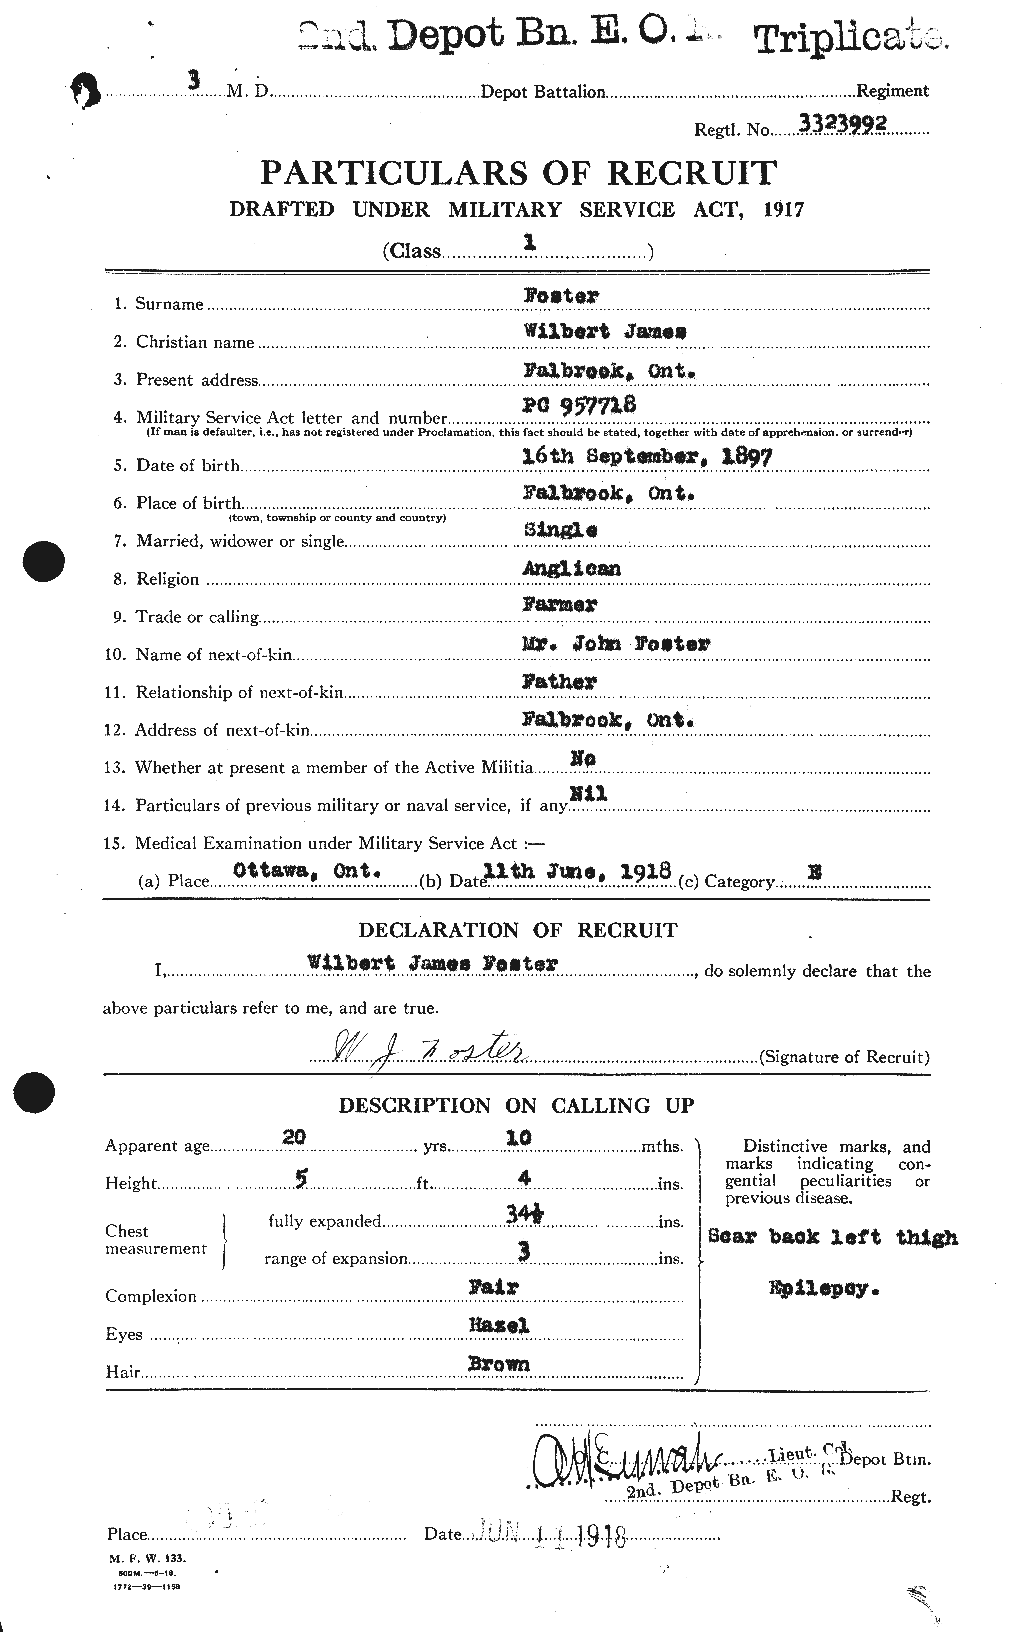 Dossiers du Personnel de la Première Guerre mondiale - CEC 335267a